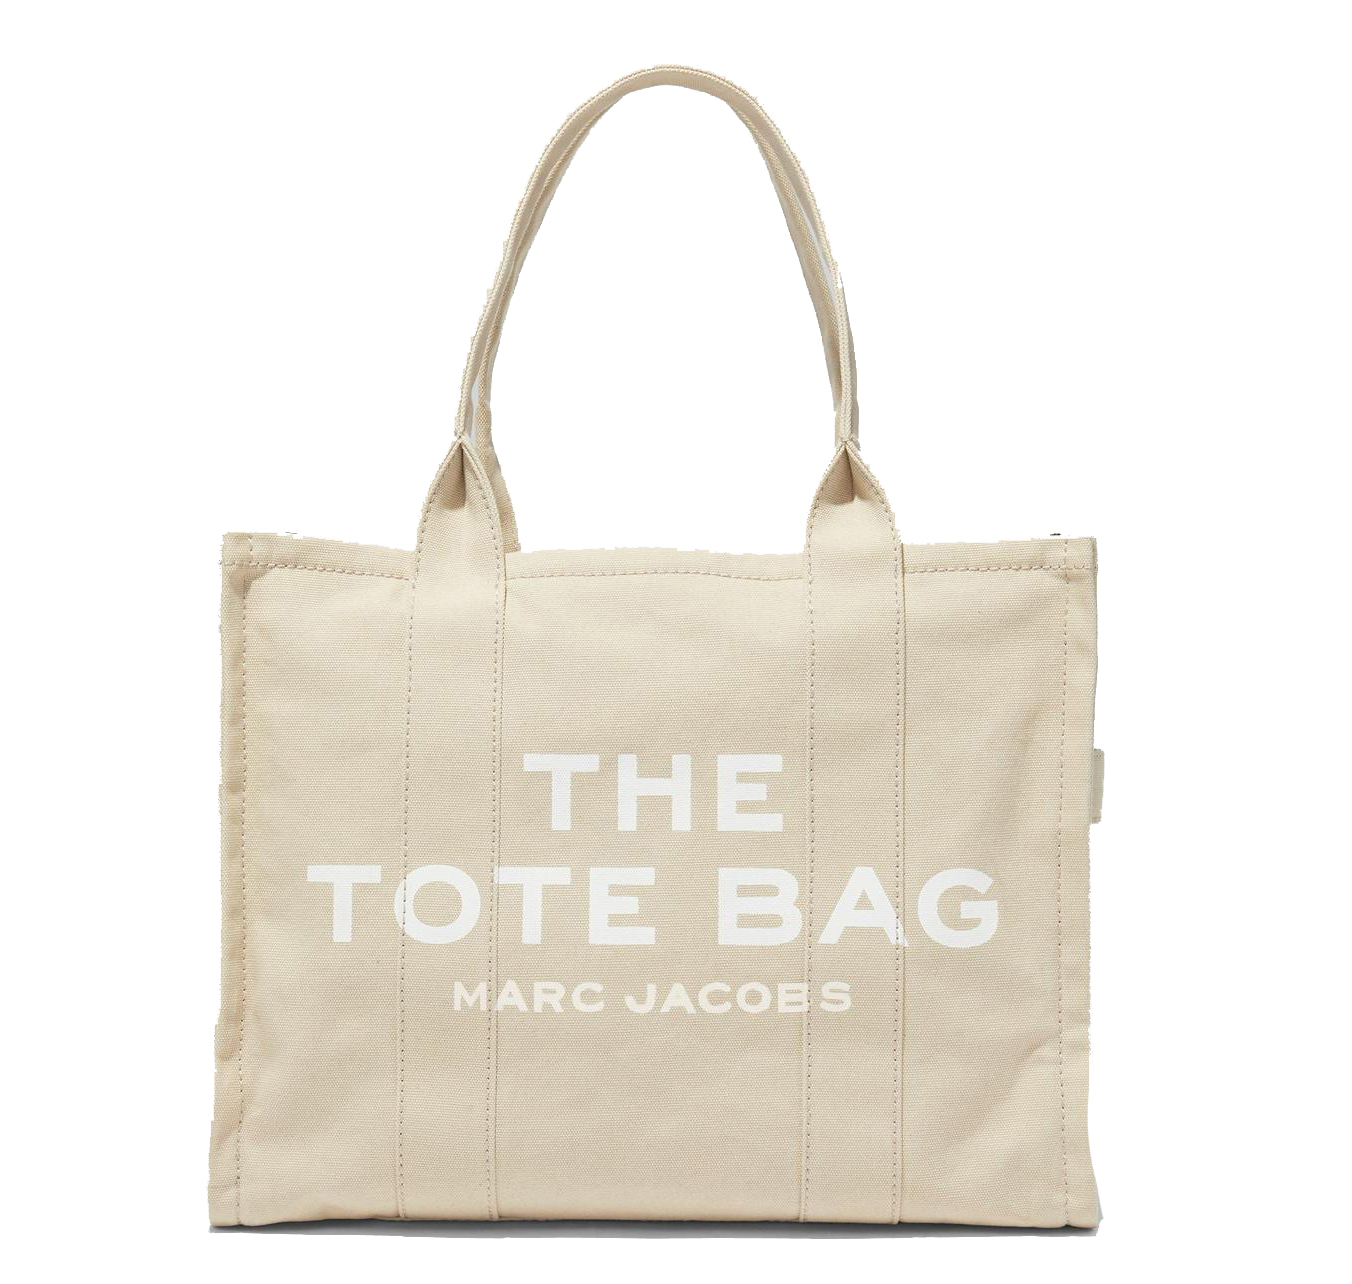 Bolso Marc Jacobs the tote bag beige - 275.00 € Bolsos y zapatos de mujer, marcas de moda online, Michael kors, Karl lagerfeld, Guess, Armani, Premiata y muchas marcas más